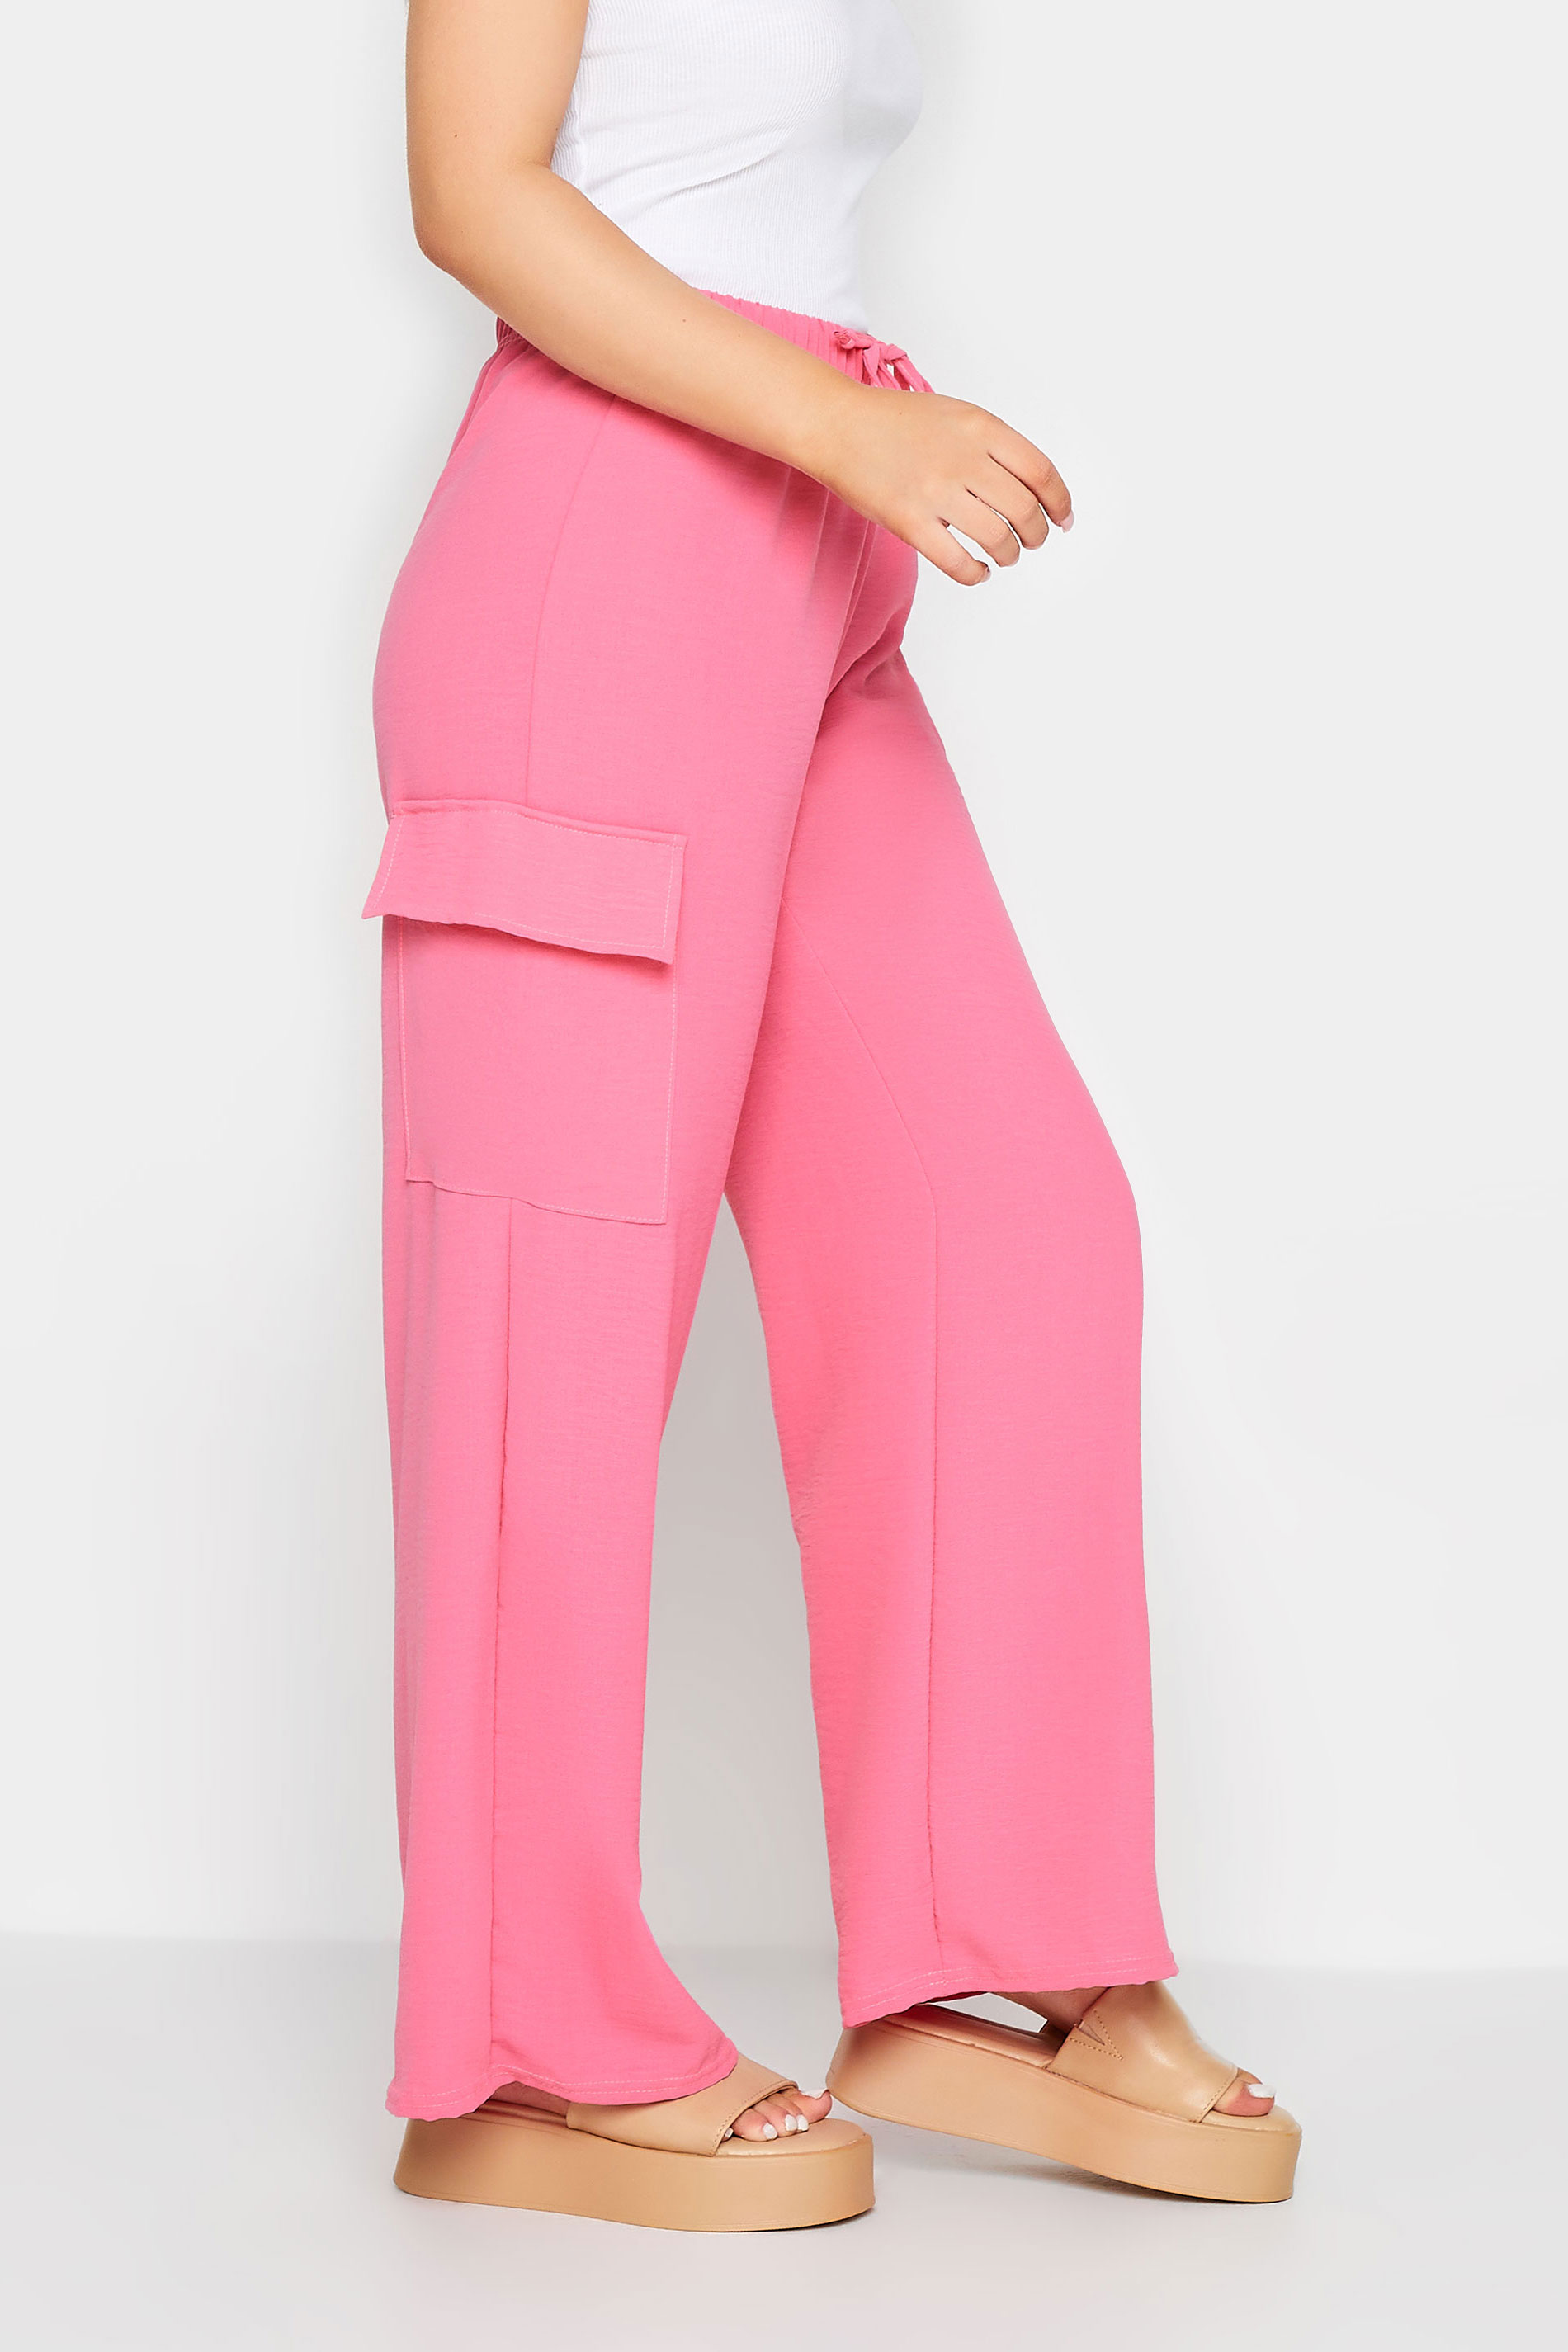 PixieGirl Hot Pink Utility Trousers | PixieGirl